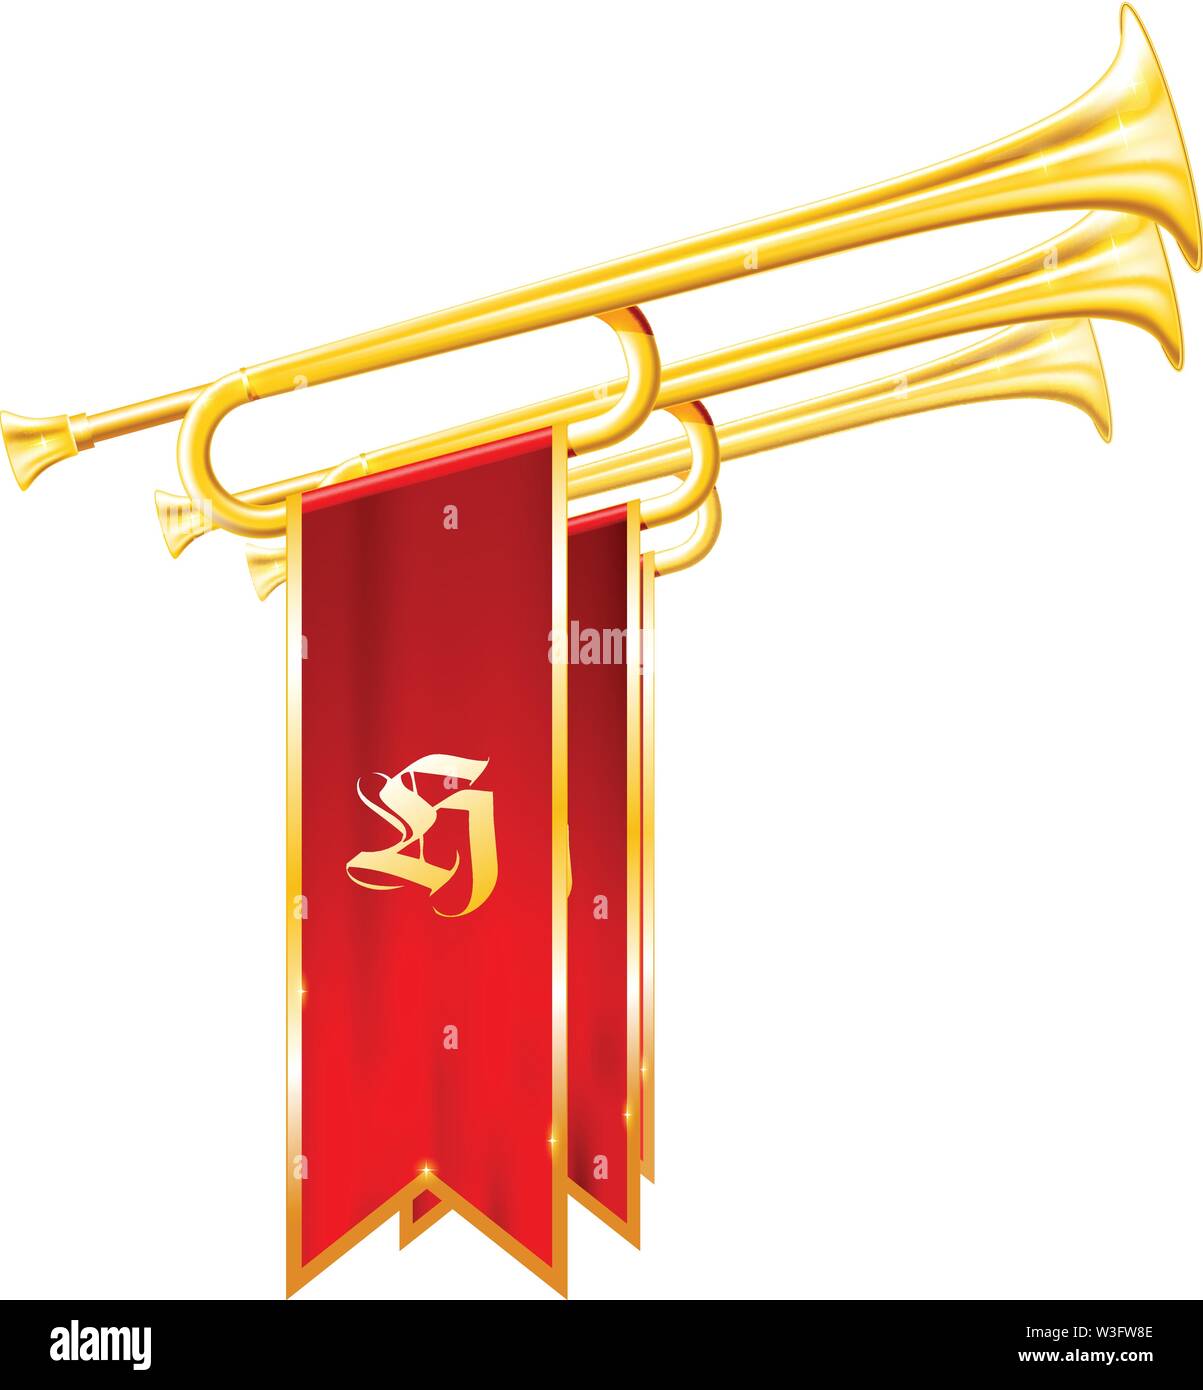 Vintage Trompeten oder signalhörner mit Fahnen - fanfare von Triumph, Symbol der Ehre Stock Vektor